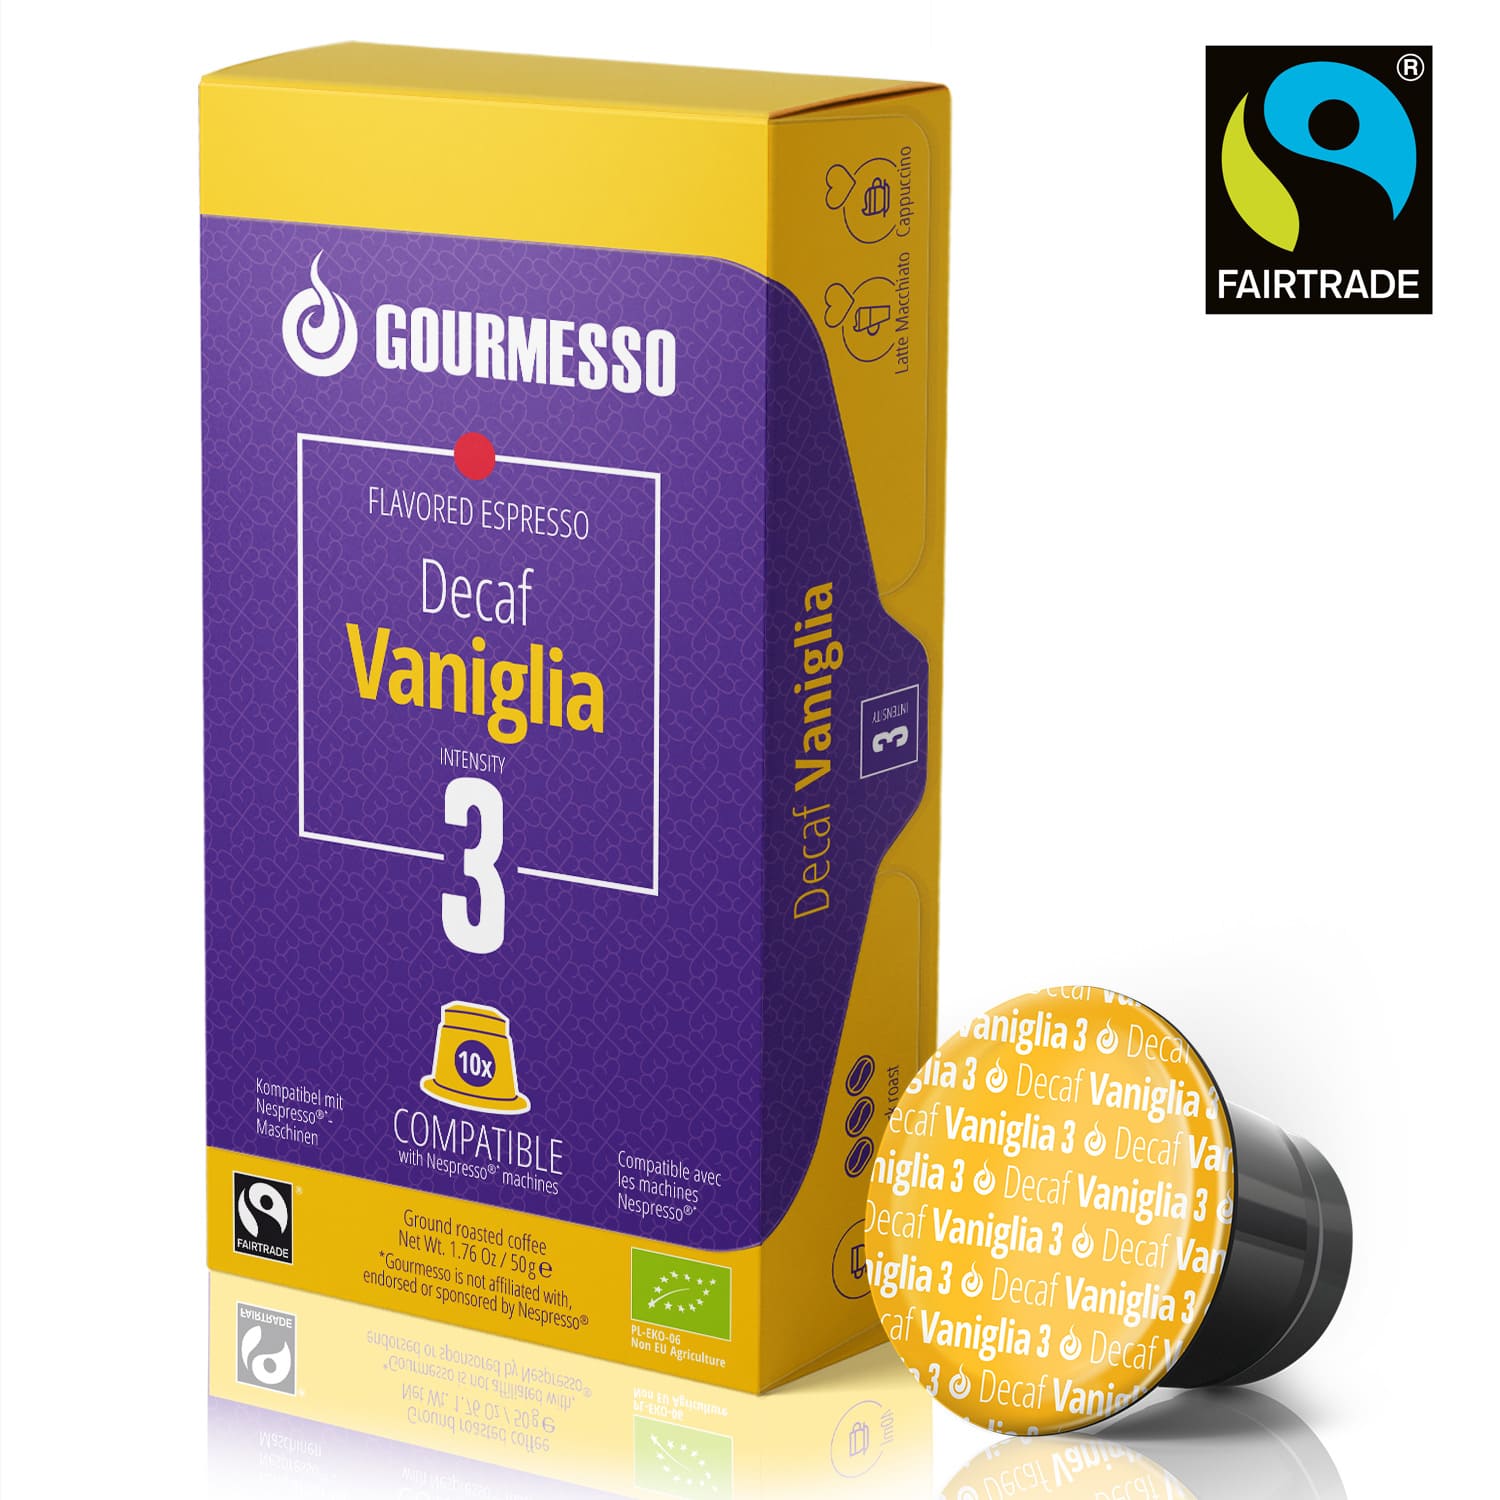 Gourmesso Decaf Vaniglia - Fairtrade - 10 Pods-Gourmesso